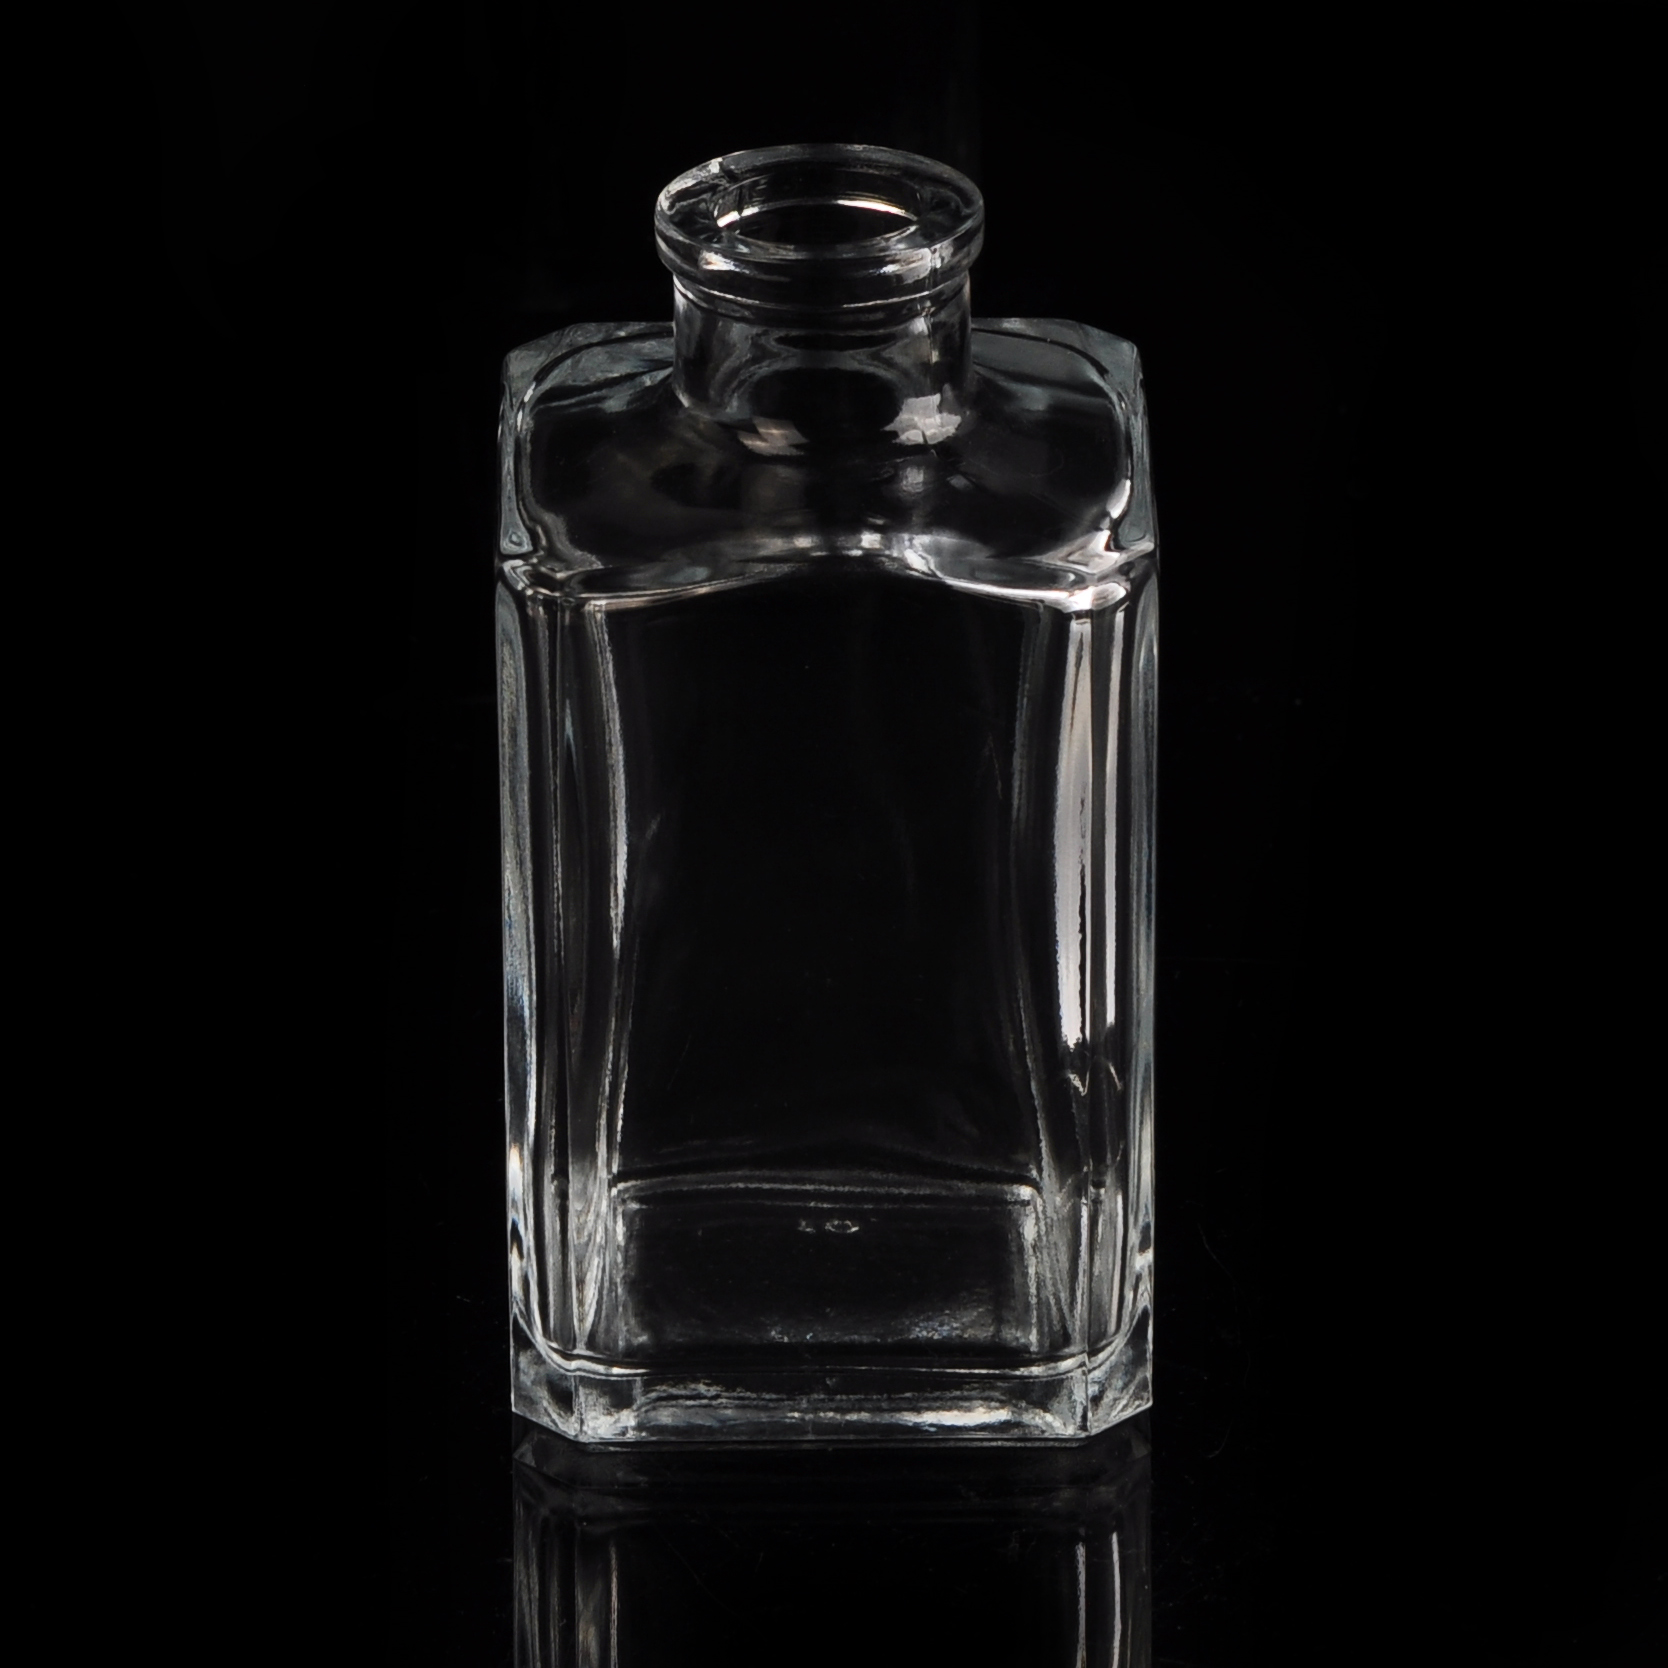 botol minyak wangi acuan kaca botol minyak wangi persegi